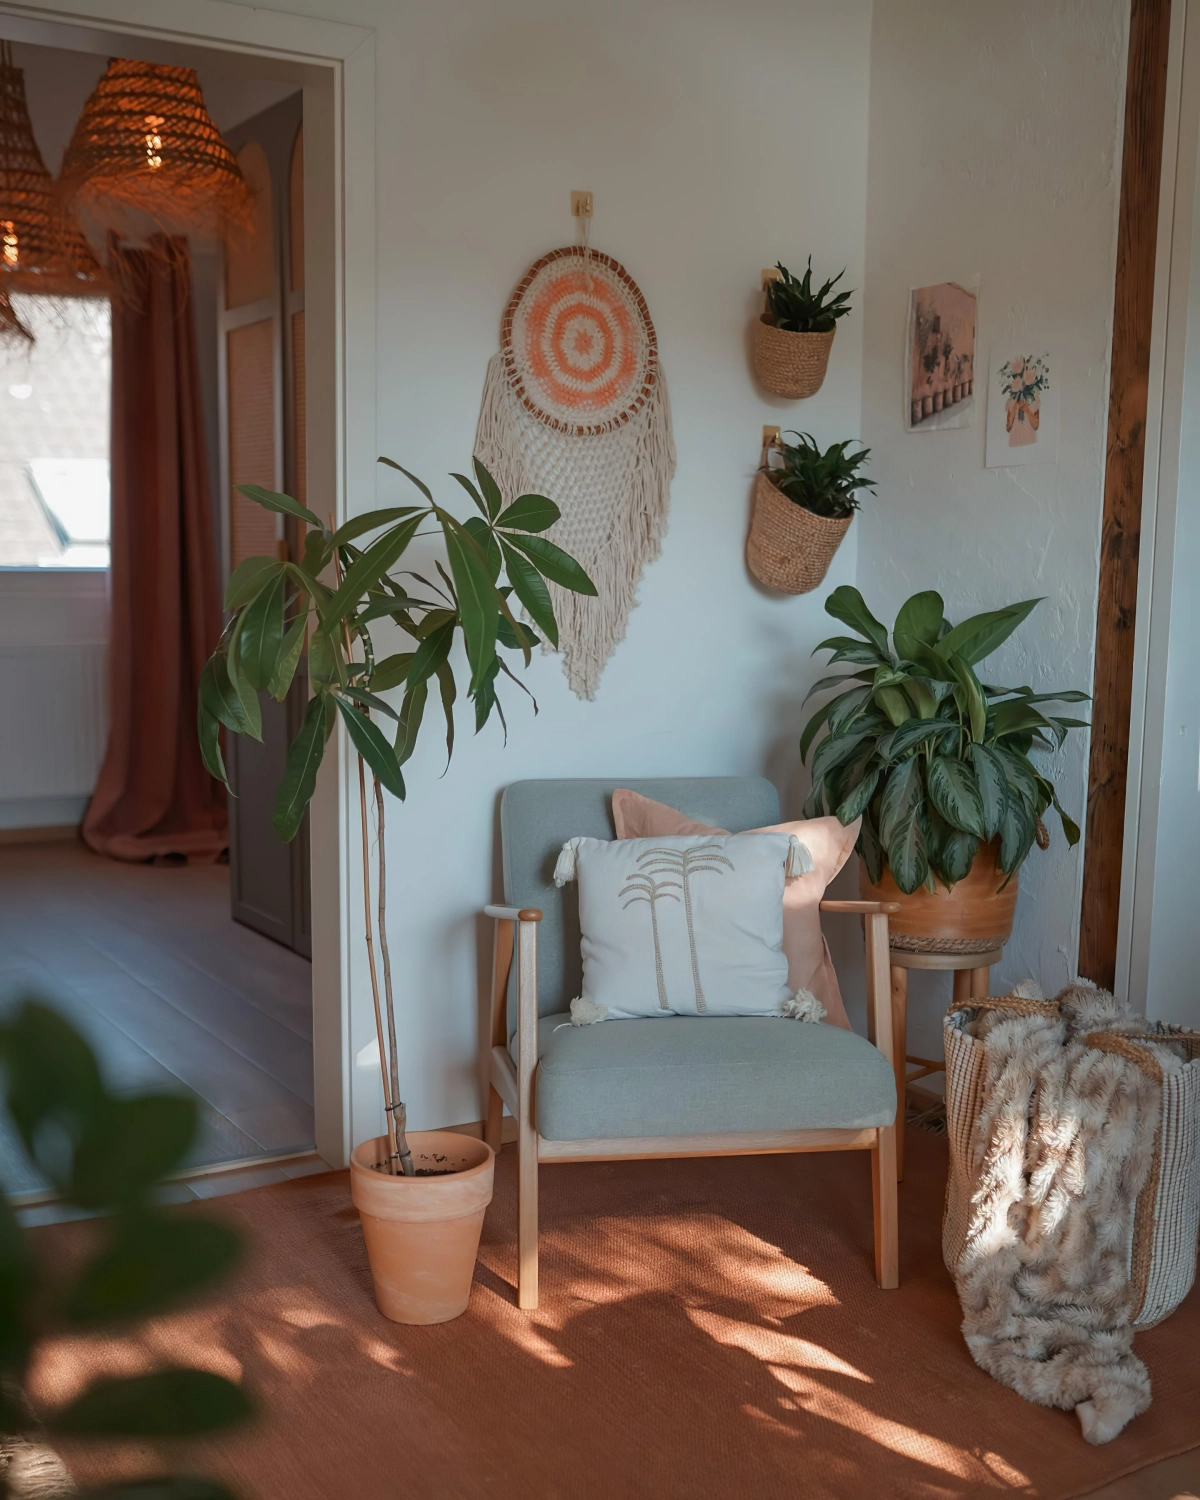 coin de repos fauteuil chaise bois coussin decoratif plante verte plaid